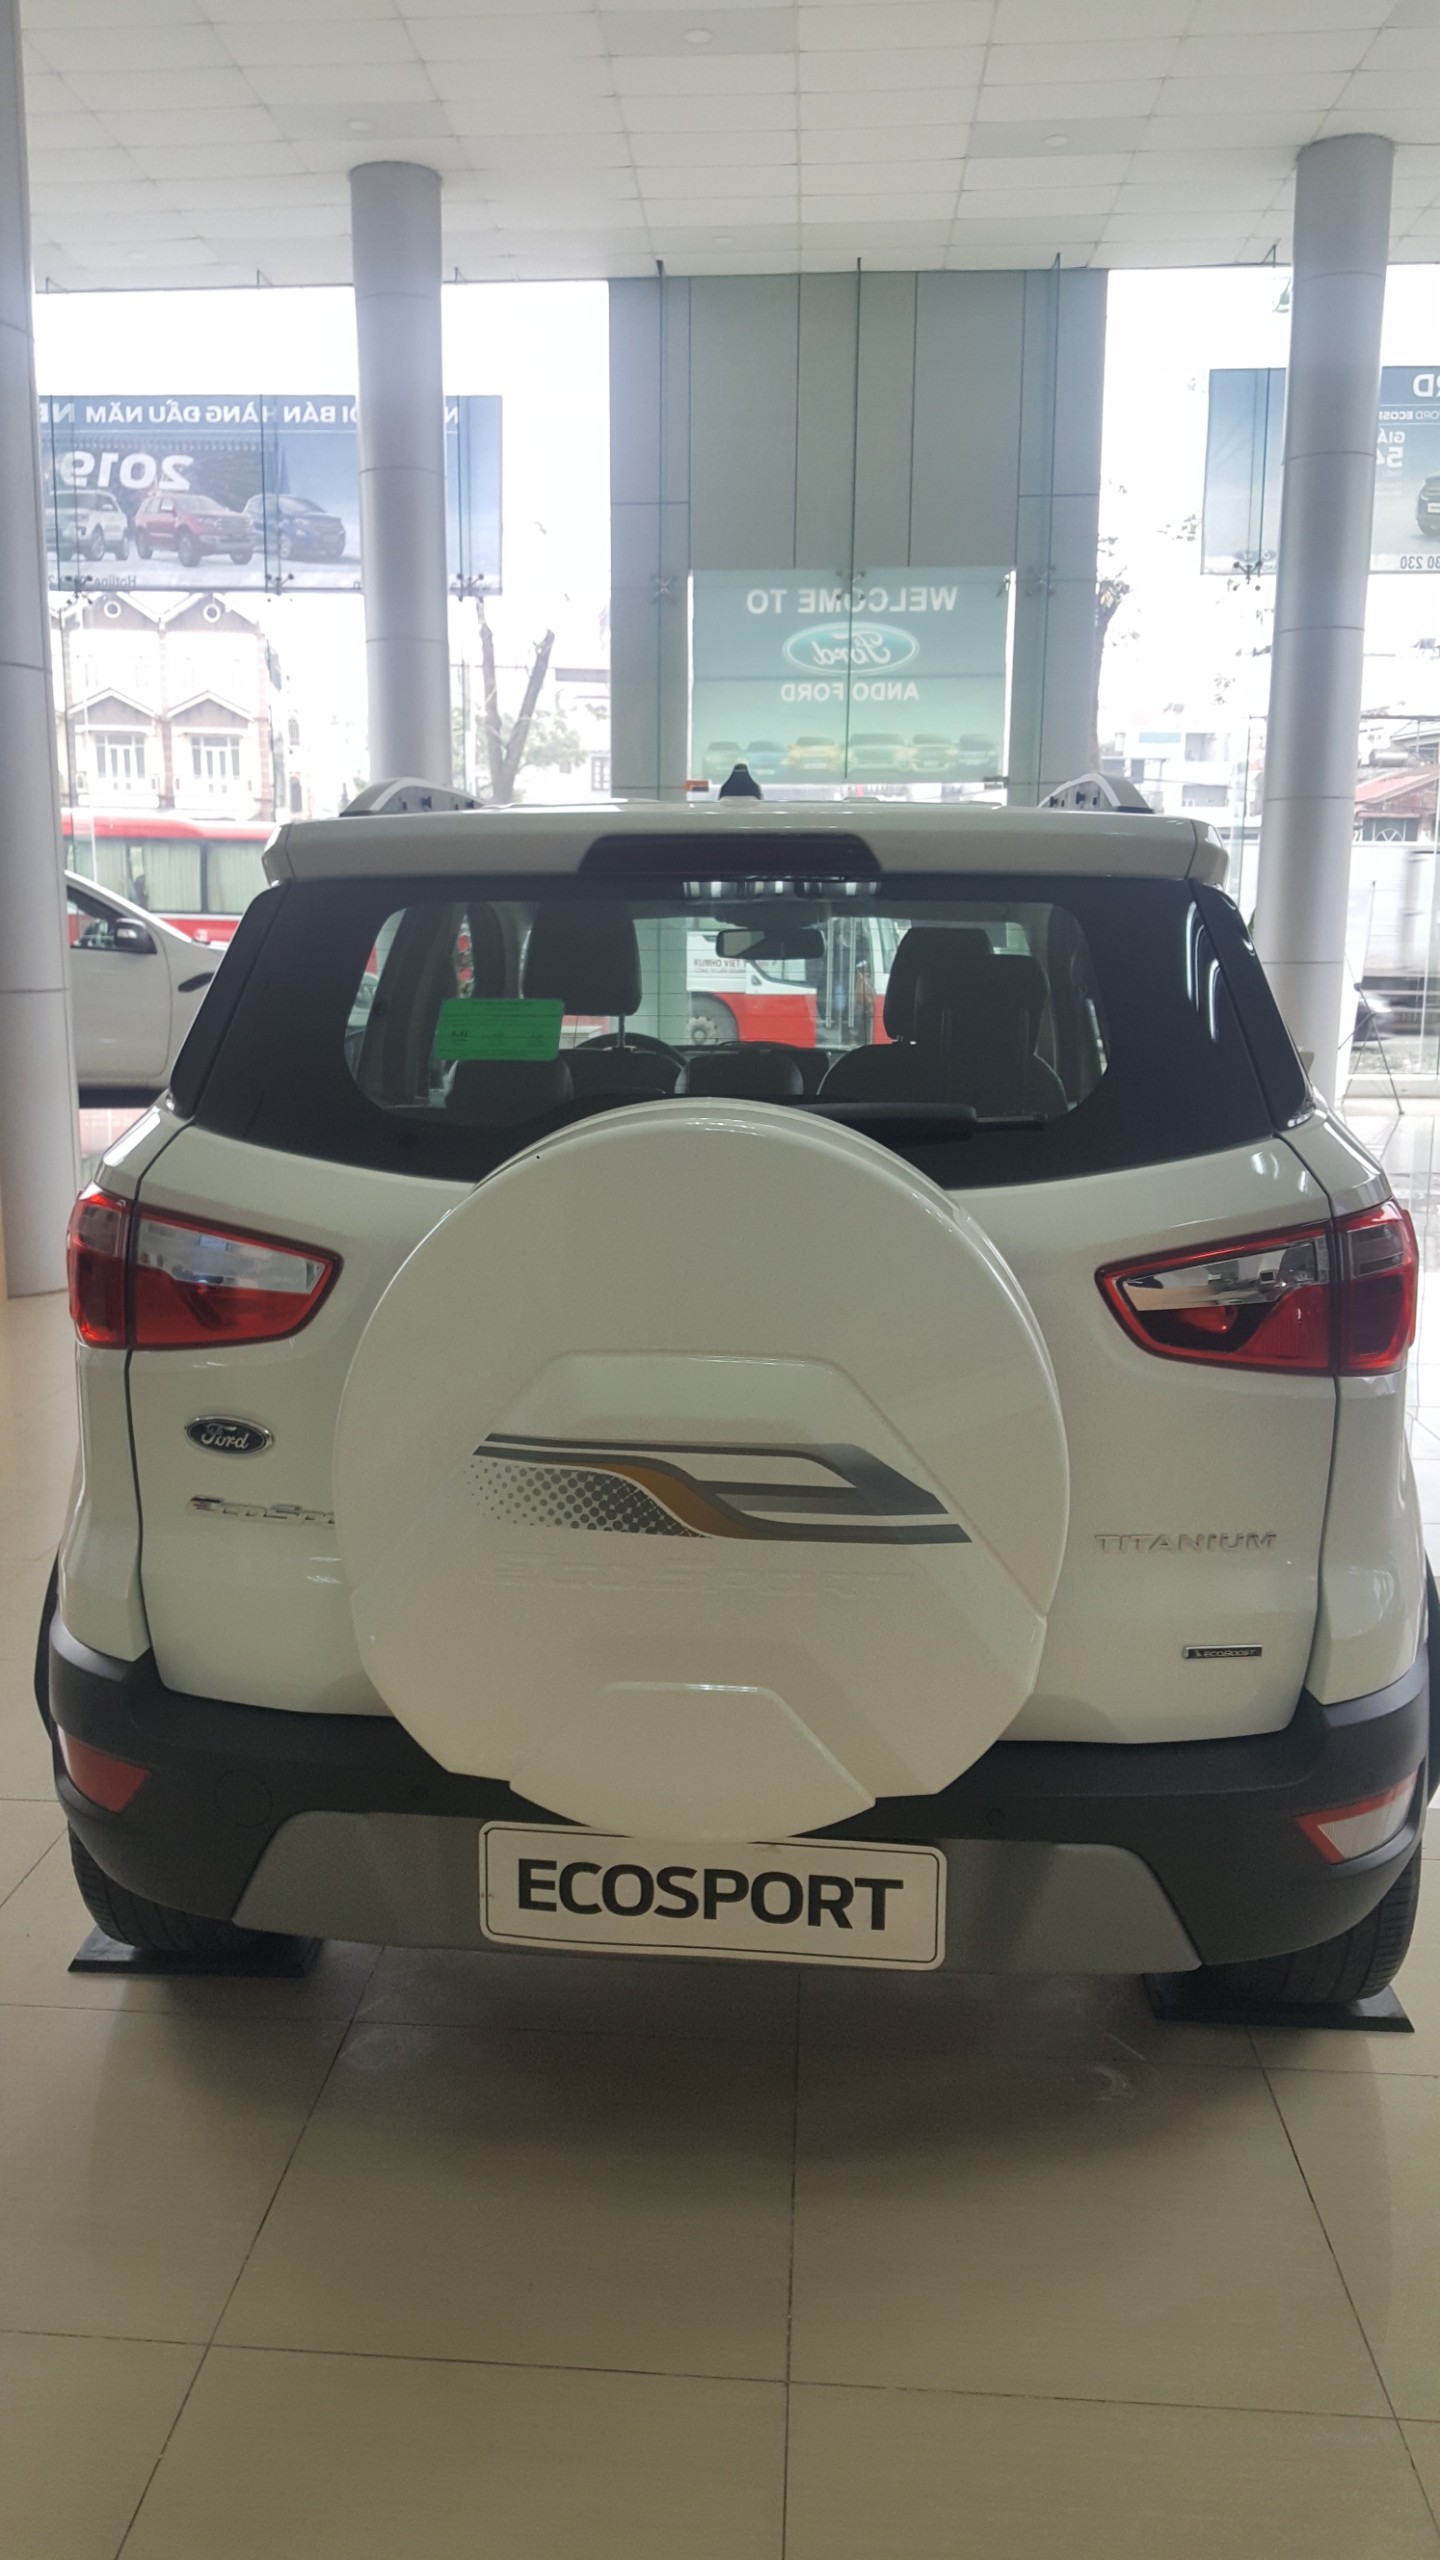 Ecosport giảm giá kịch sàn, ưu đãi tặng nhiều phụ kiện-3